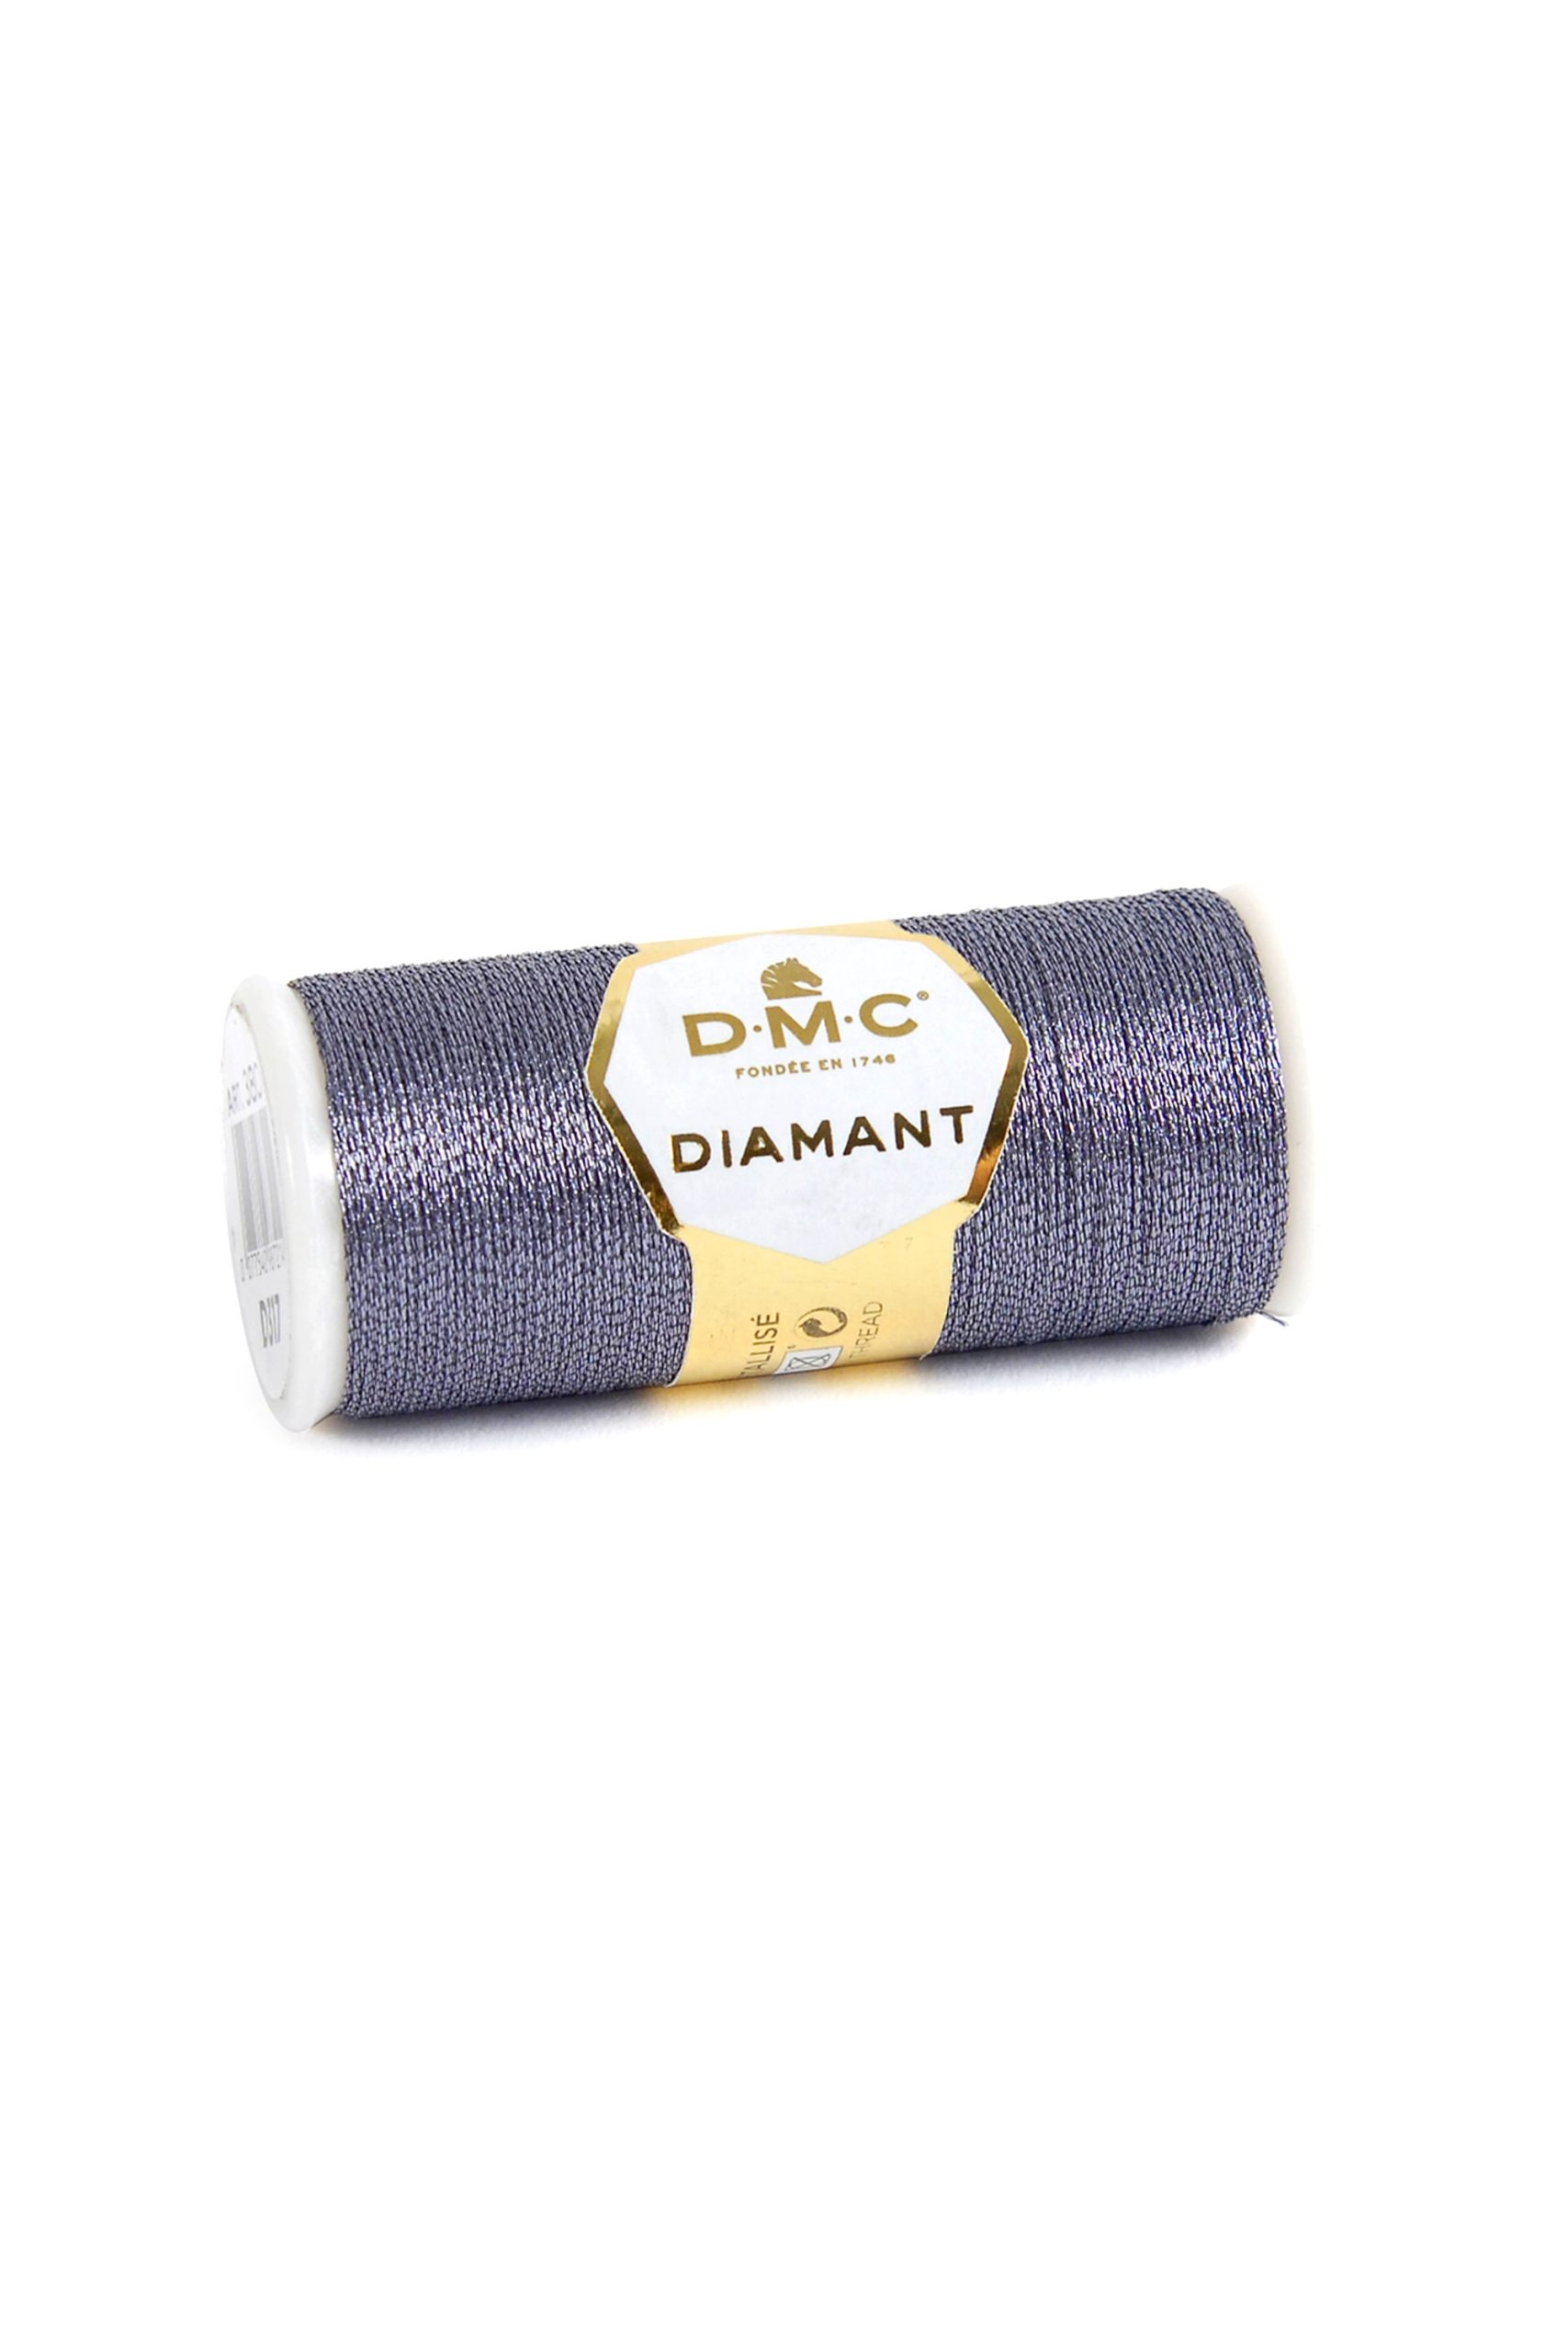 Filato Metallizzato Dmc Diamant Colore D317